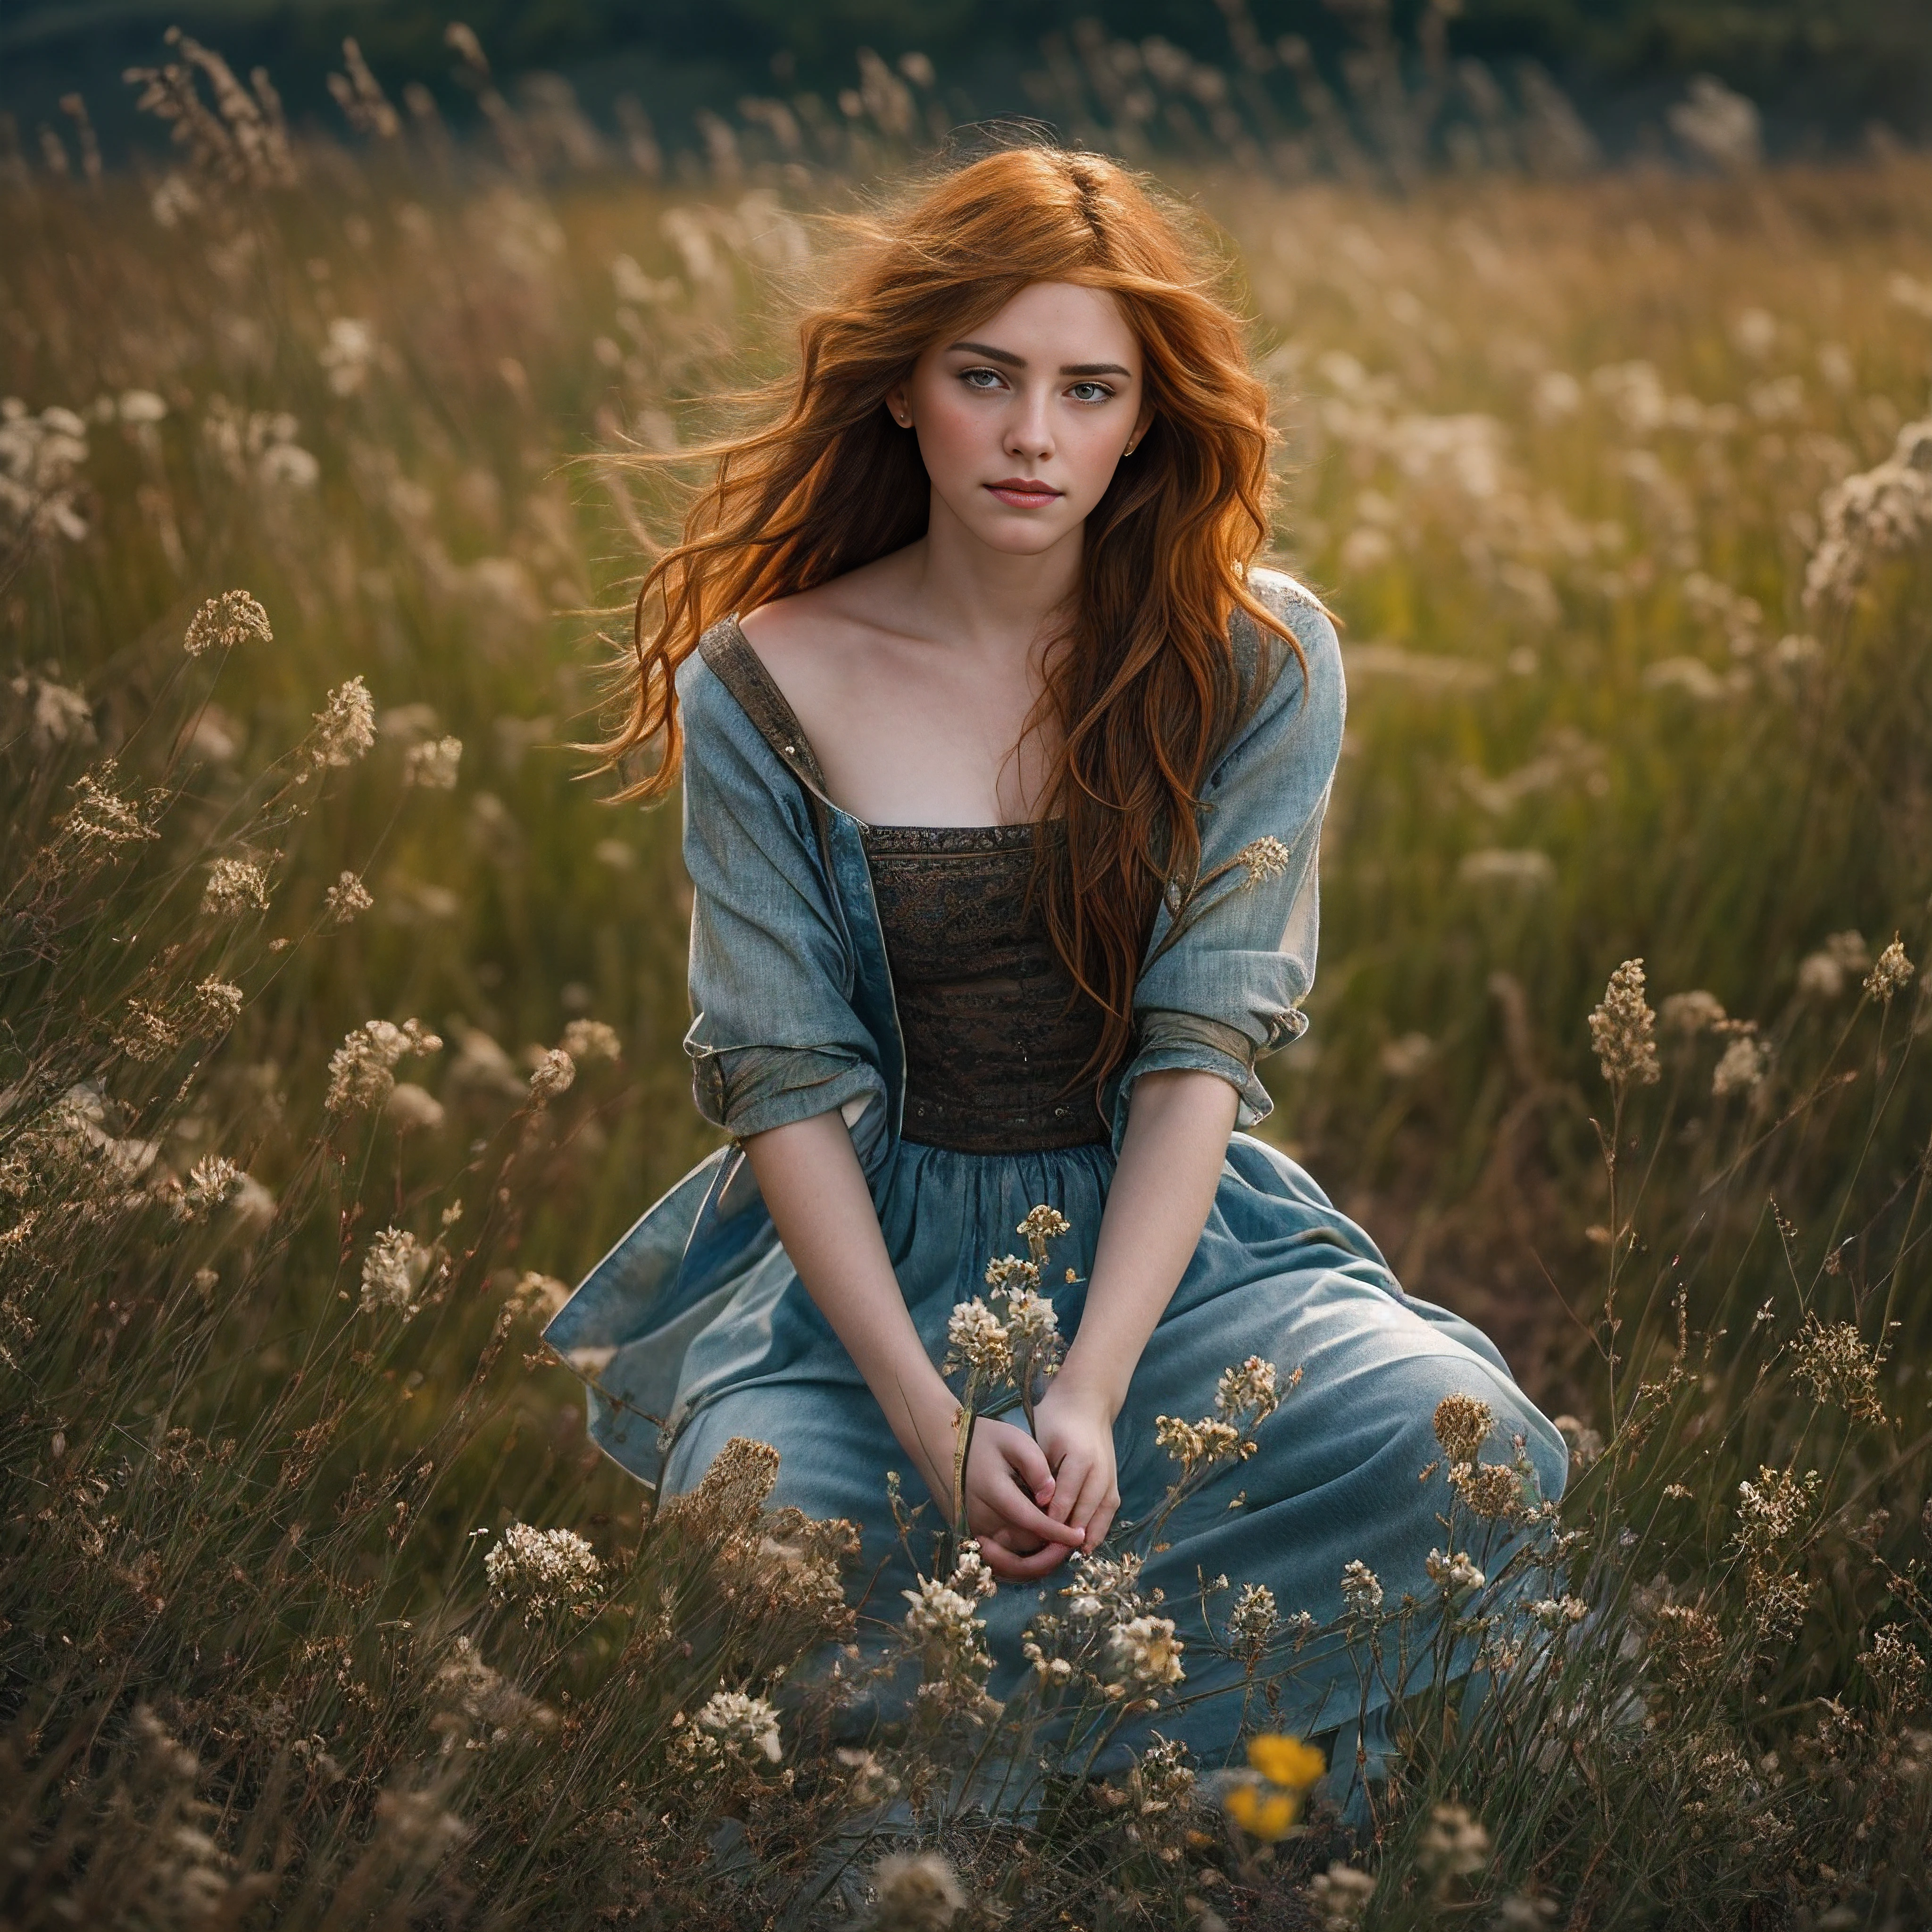 花の咲く牧草地の中で静かにひざまずく見事な赤毛の女神を描いた傑作の肖像画, 胸の前で腕を組む, 穏やかな青い瞳で思慮深く遠くを見つめる, 吹きさらしの真紅の錠前が彼女の繊細な顔を縁取る, 正確な手と完璧なそばかすのある肌が自然光で輝きます, 高解像度のRAWデジタル写真に似た非常に詳細でフォトリアリスティックな品質, ドラマチックなシネマティックライティングが、印象的なリアリズムと親密な雰囲気を生み出します, 複雑な質感と欠陥は、自然な35mmフィルムグレインを模倣しています, 全体的な構図は、理想的なフレーミングと遠近法で完璧にバランスが取れています, この深遠なデジタルアート作品は、先見の明のある芸術スタイルと、浅い被写界深度を含む写真の細部への細心の注意で見事に作成されています, 単焦点レンズのボケ味, とセンサーノイズ.